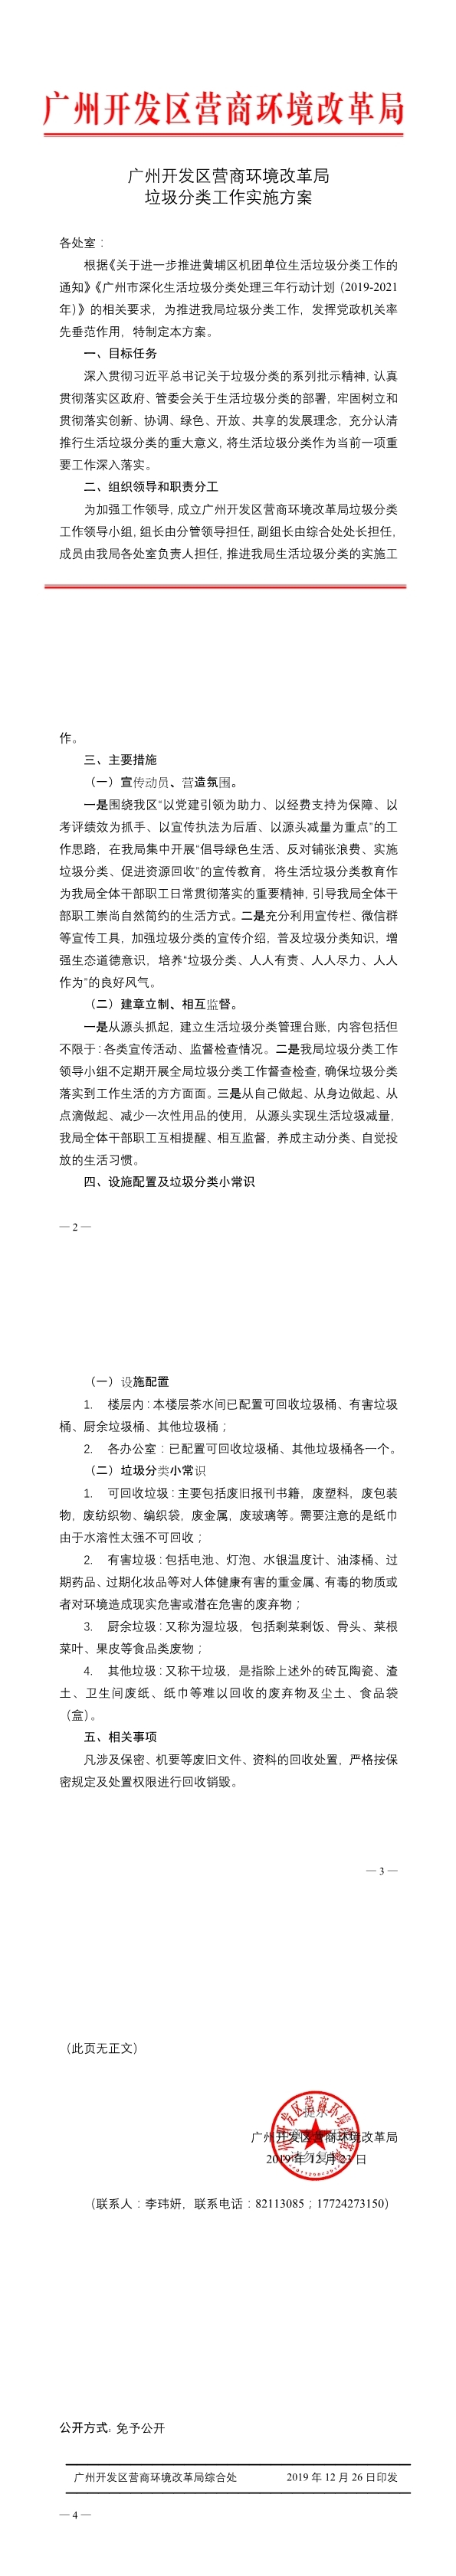 （盖章）广州开发区营商环境改革局垃圾分类工作实施方案(1-4).jpg